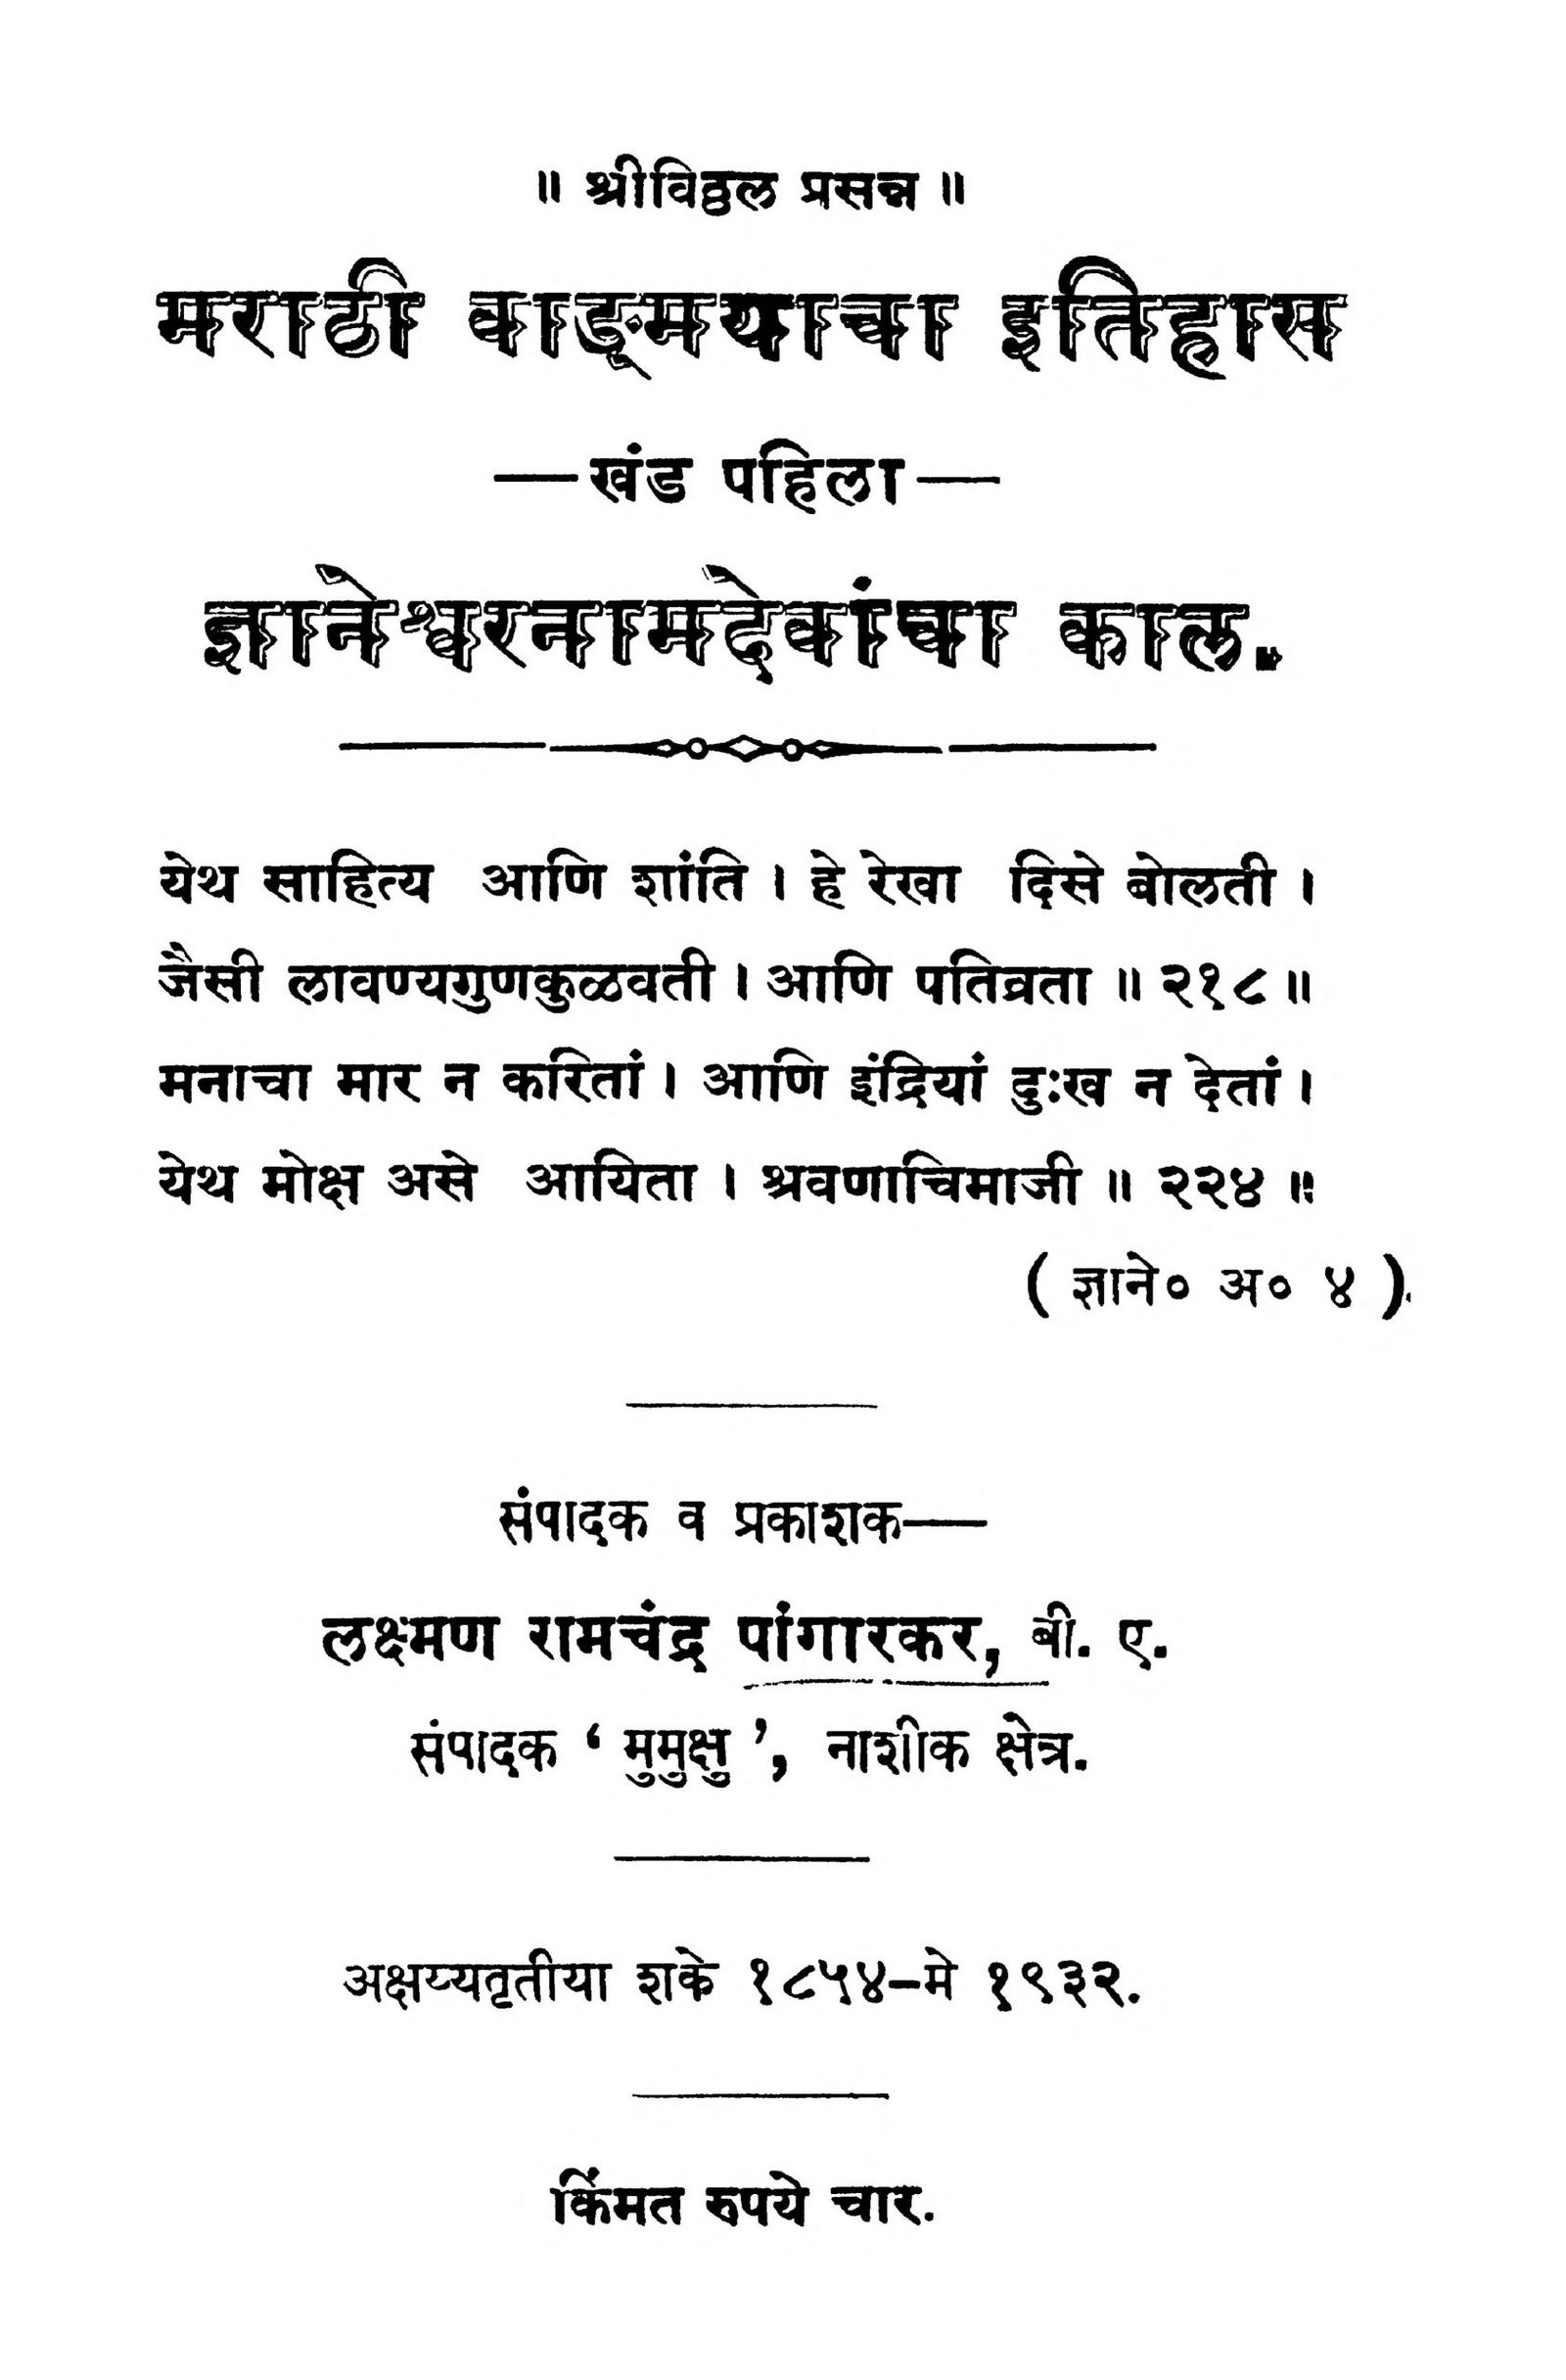 maraathii-vaadmayaachaa-itihaas-1-by-lakshman-ramchandra-scaled-2